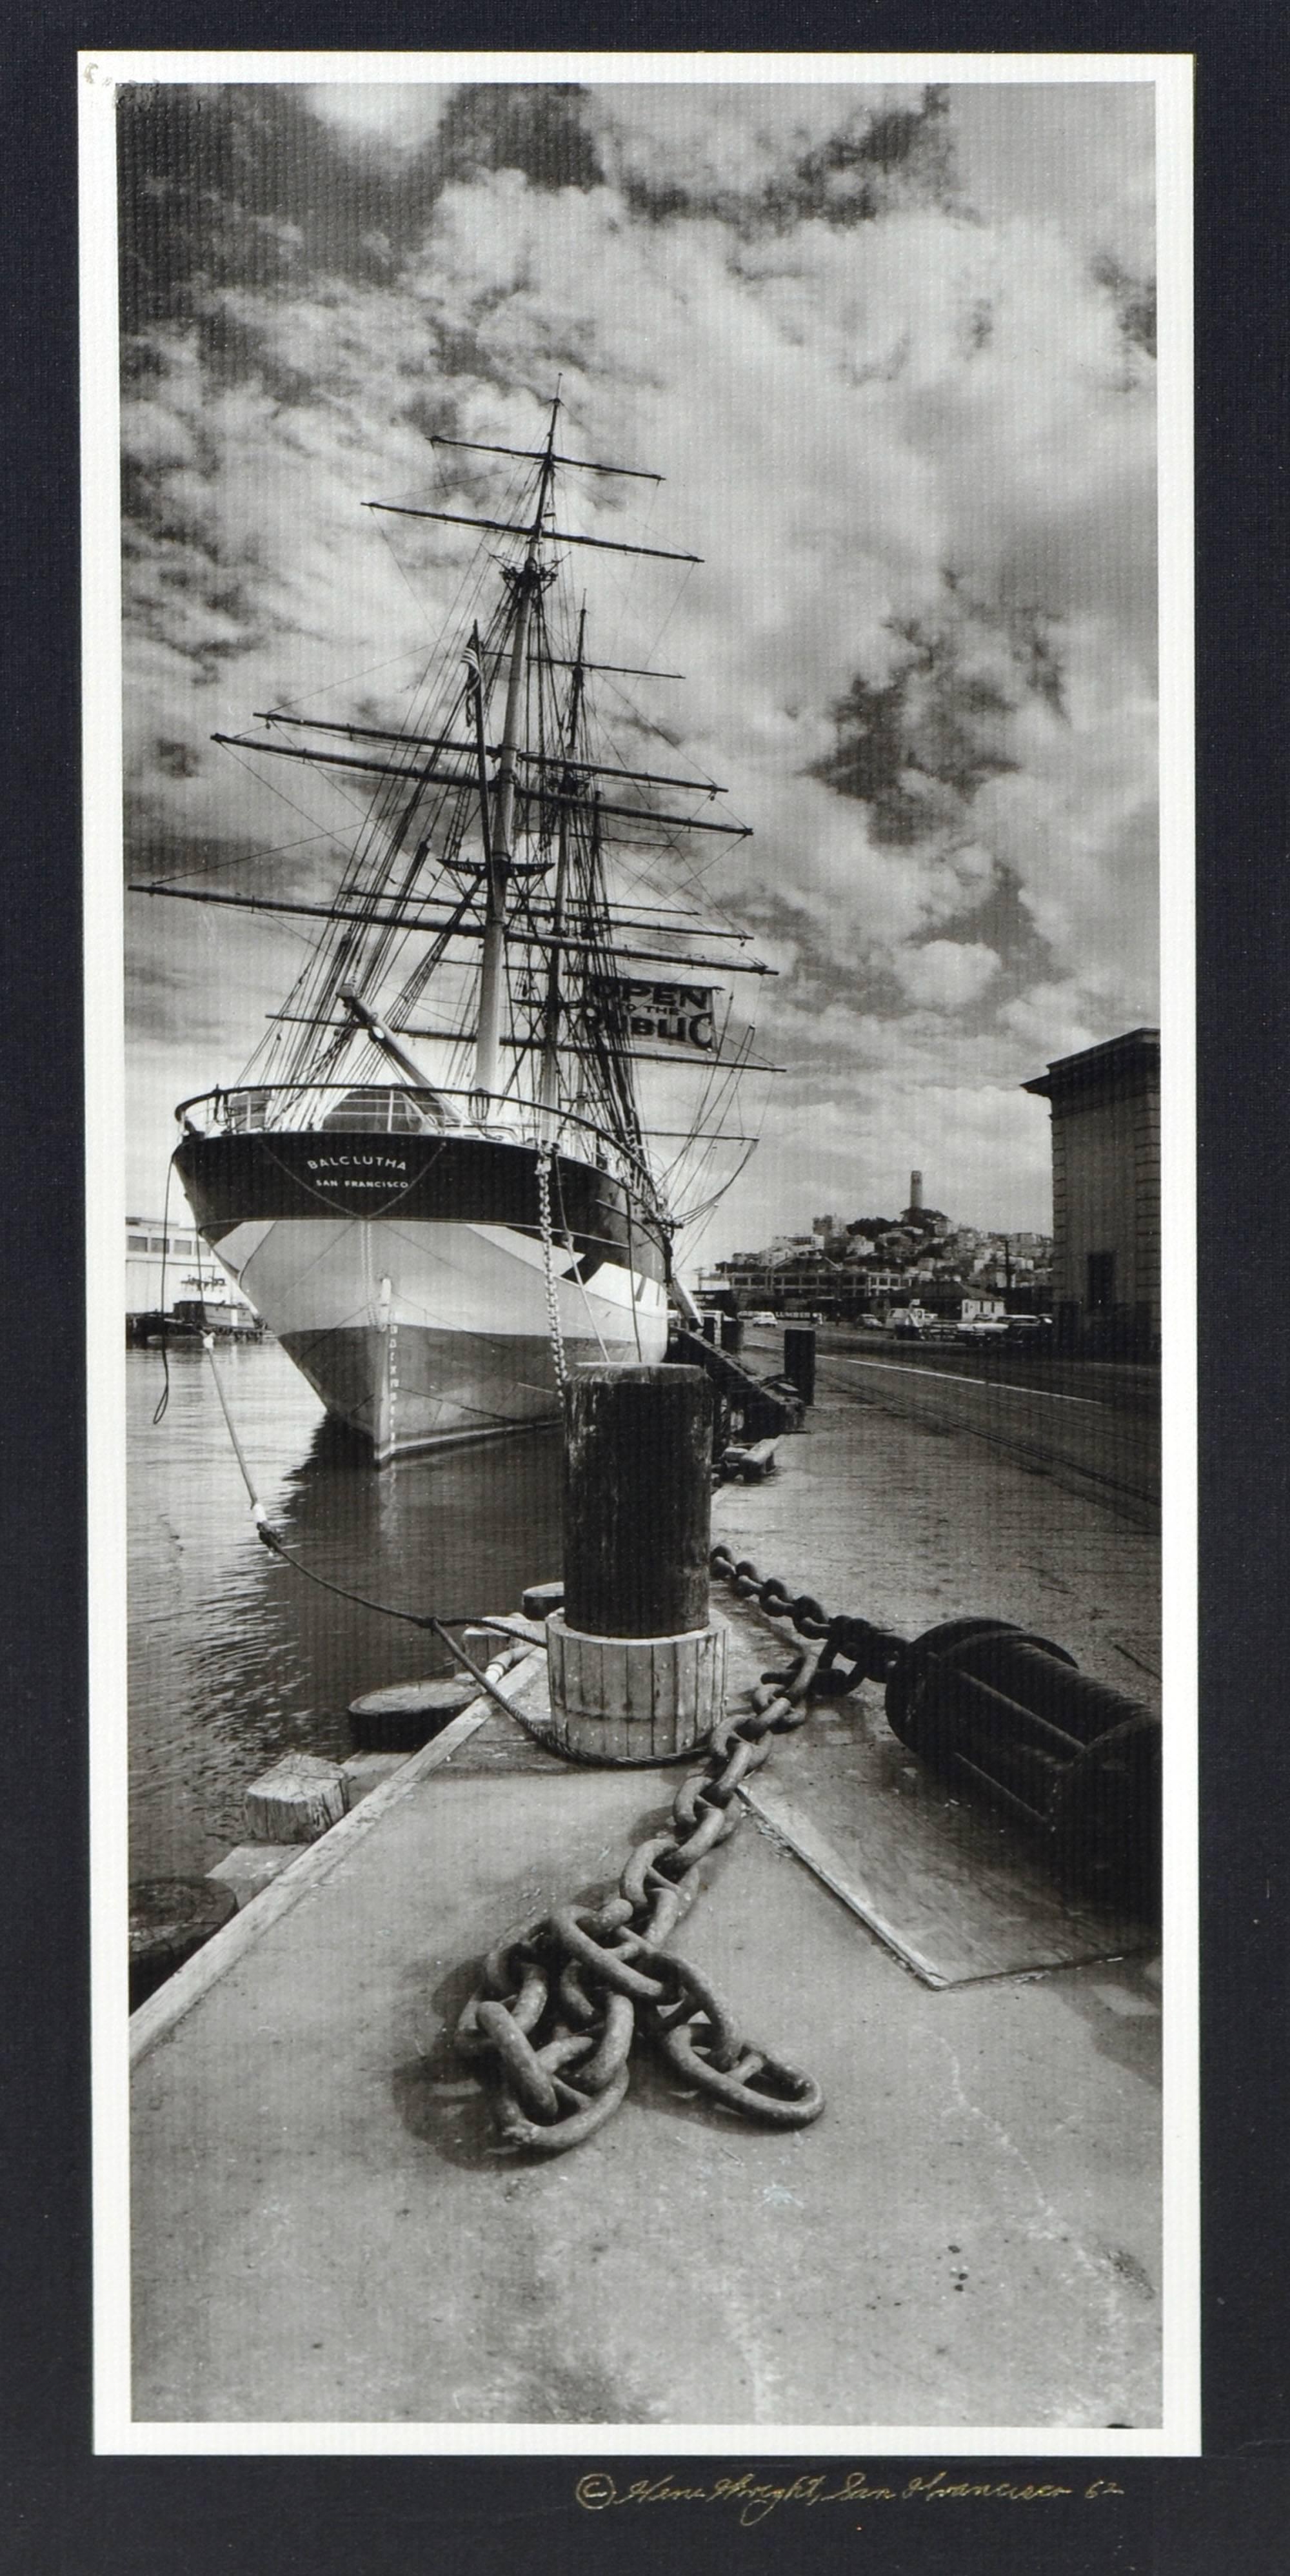 Landscape Photograph Gene Wright - Navire à quai - Photographie maritime en noir et blanc de San Francisco datant des années 1960 